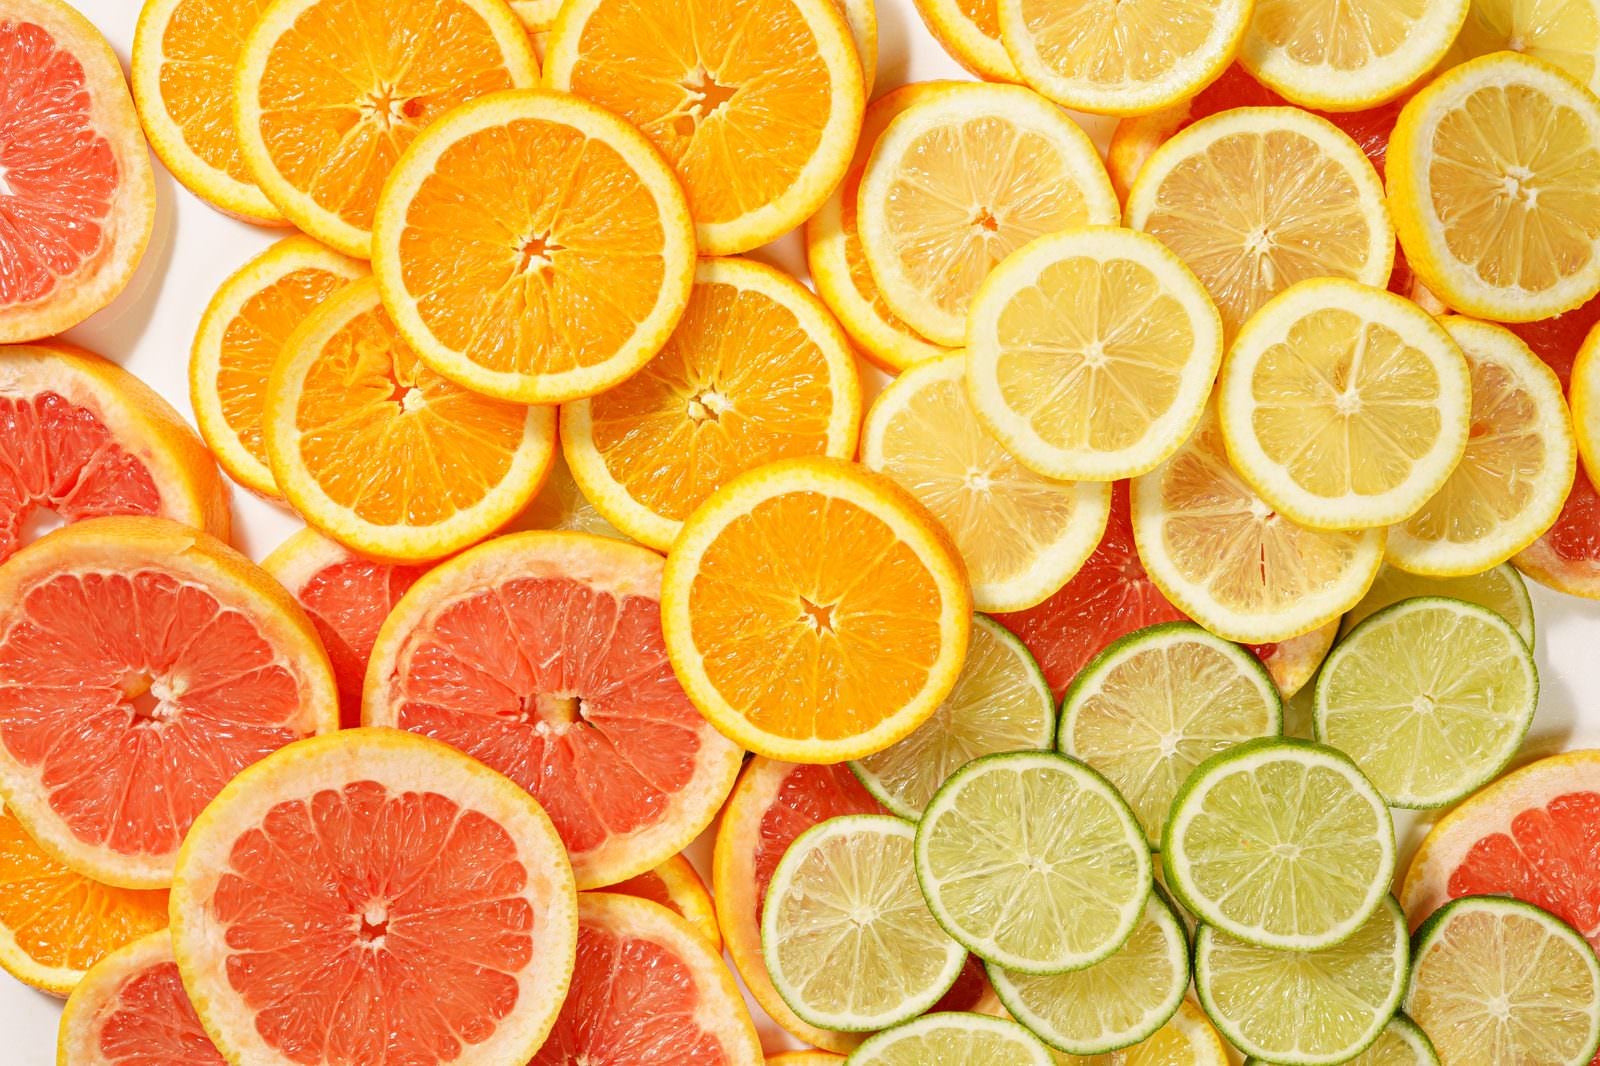 「カットされて並んだグレープフルーツやライムなどの柑橘類」の写真